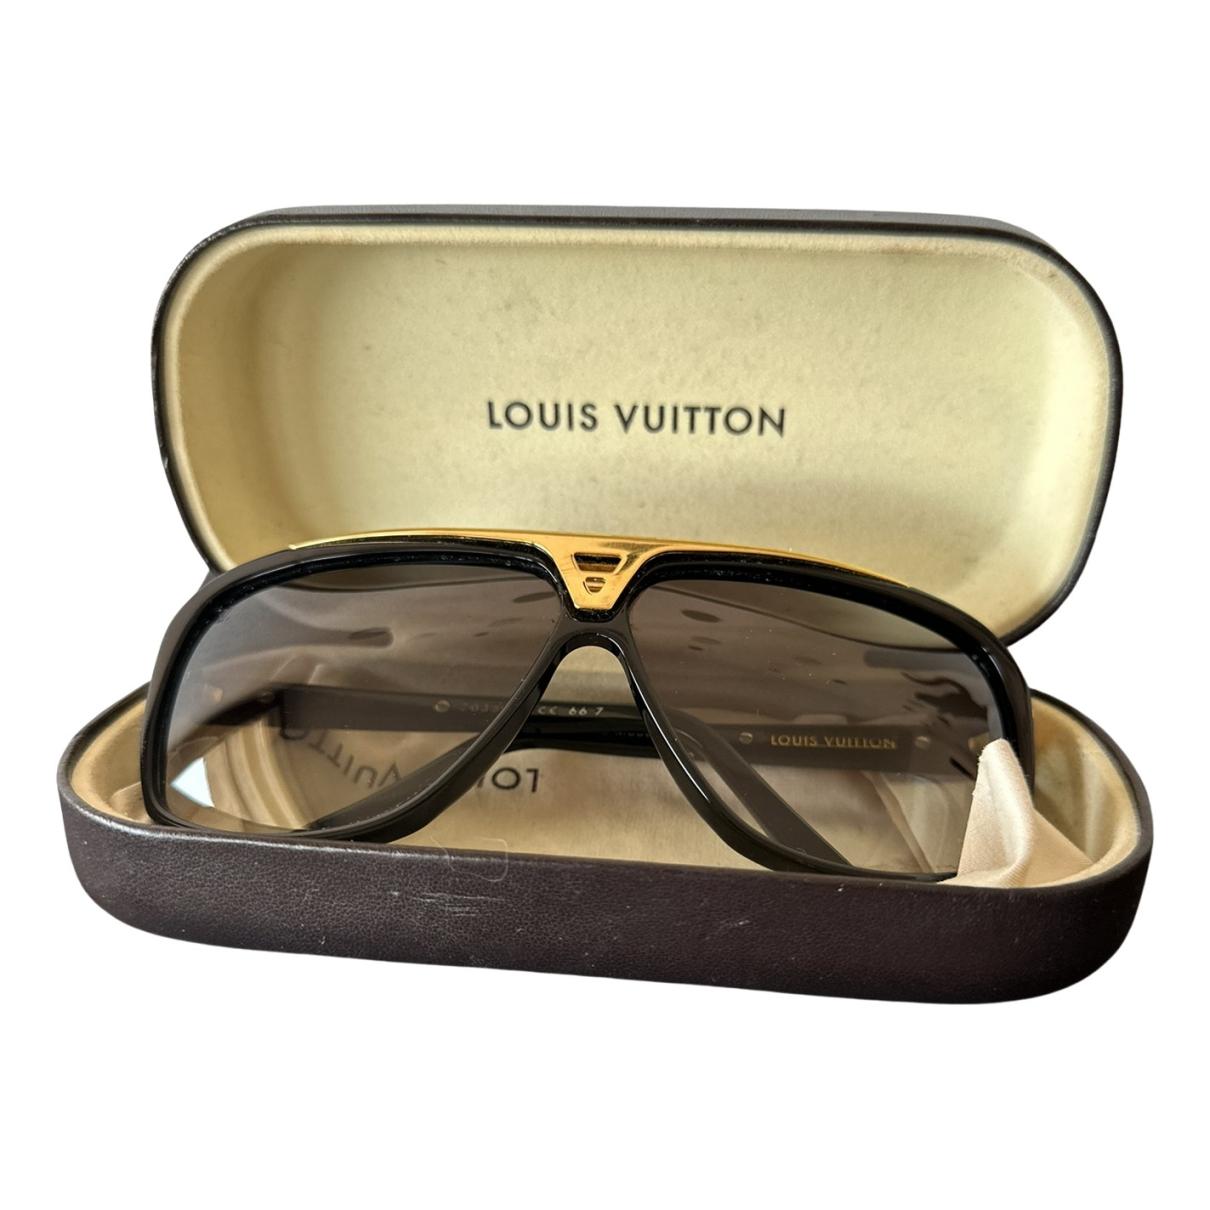 Meet Louis Vuitton's 'Millionaire' Speedy